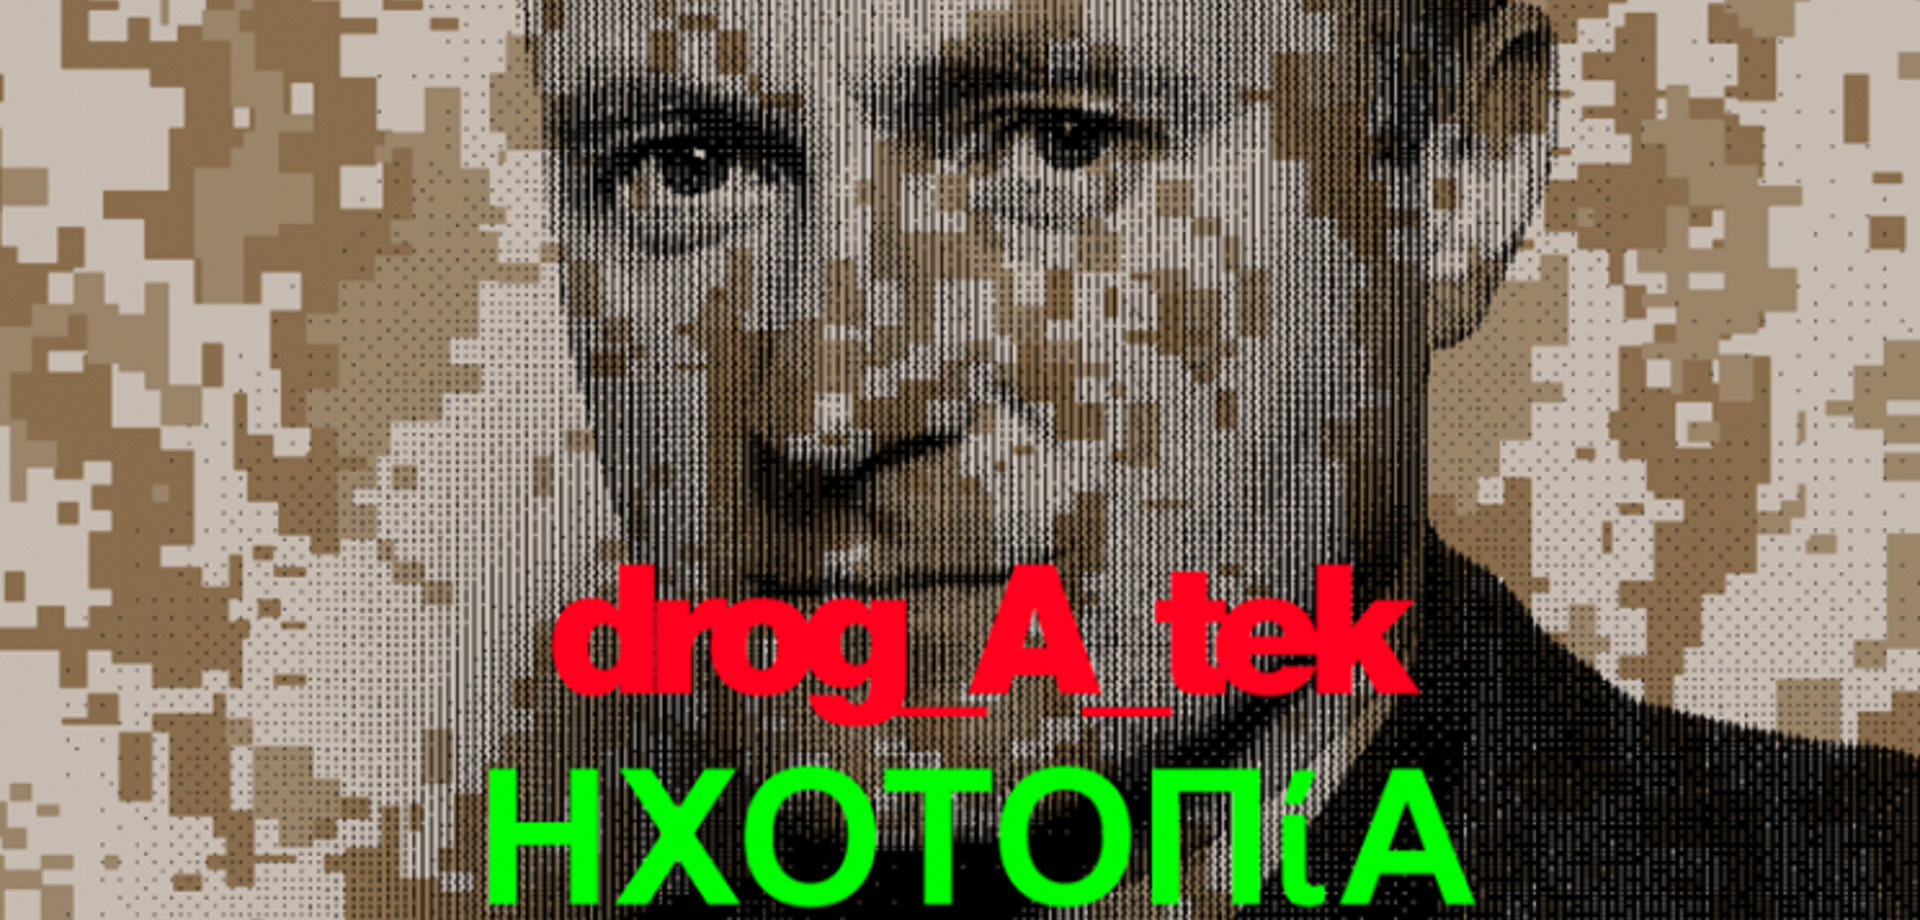 drog_A_tek + ΗΧΟΤΟΠίΑ